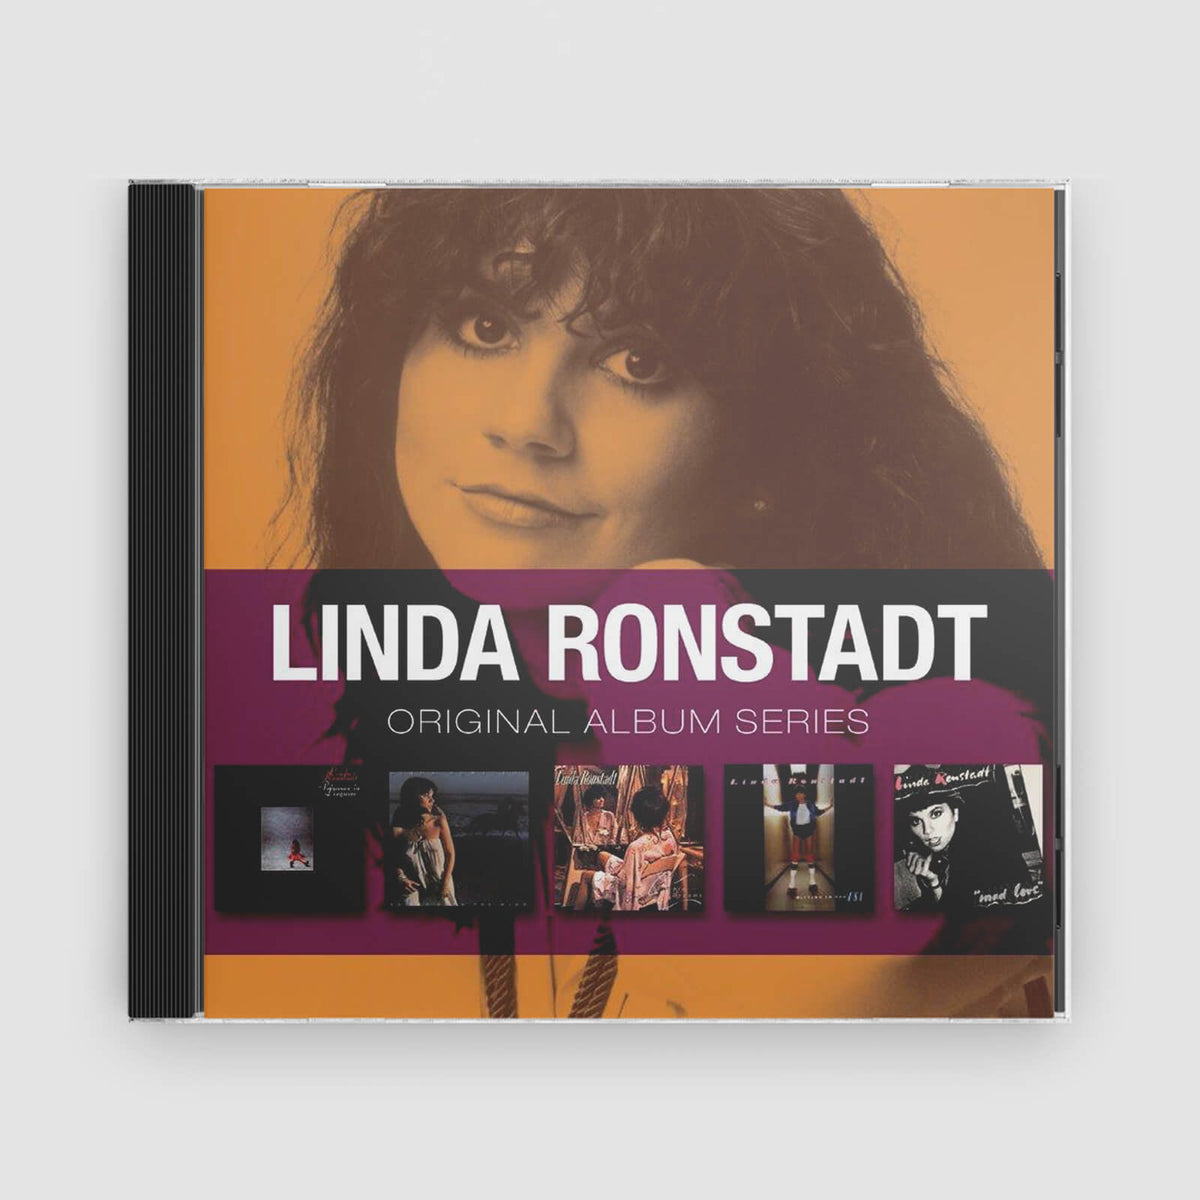 Linda Ronstadt : Original Album Series